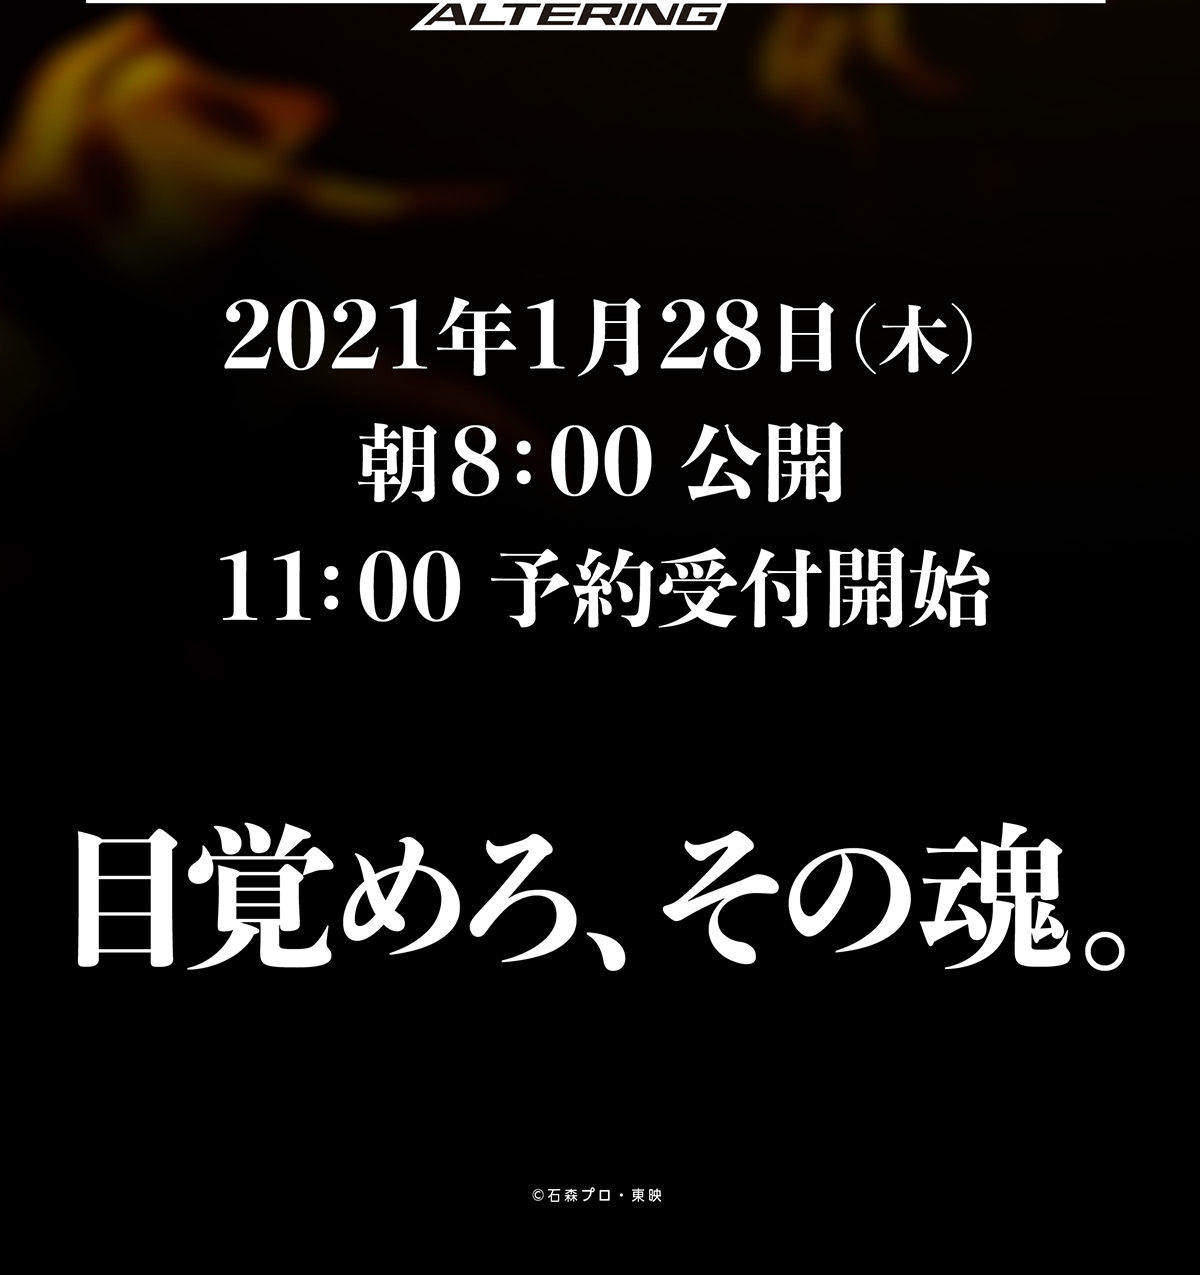 仮面ライダーアギト20周年記念商品「CSMオルタリング」2021年1月28日 